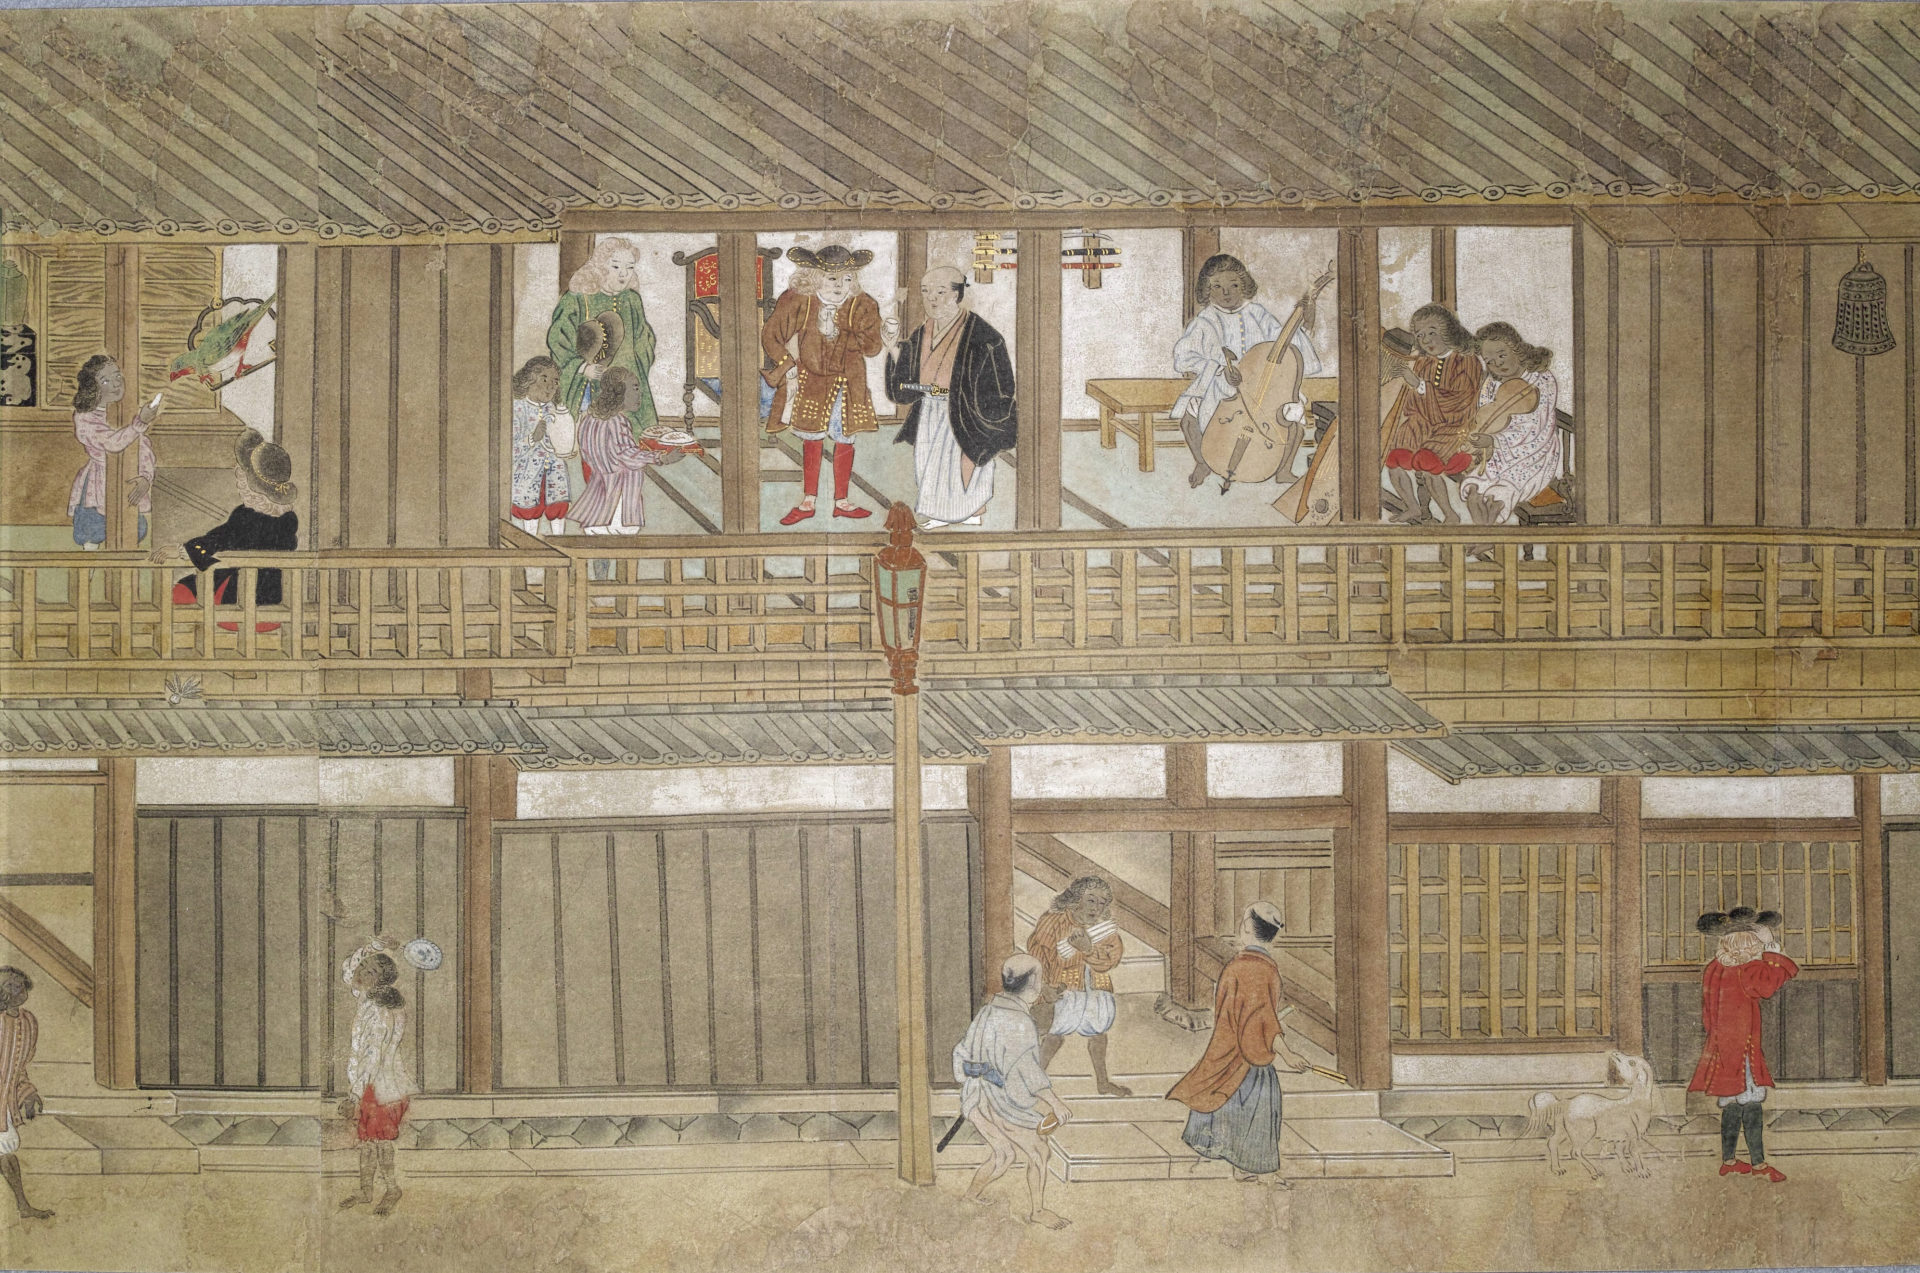 【亞太博物館連線專欄】蘭學與博物館—再現日本江戶時代的文化交流樣貌